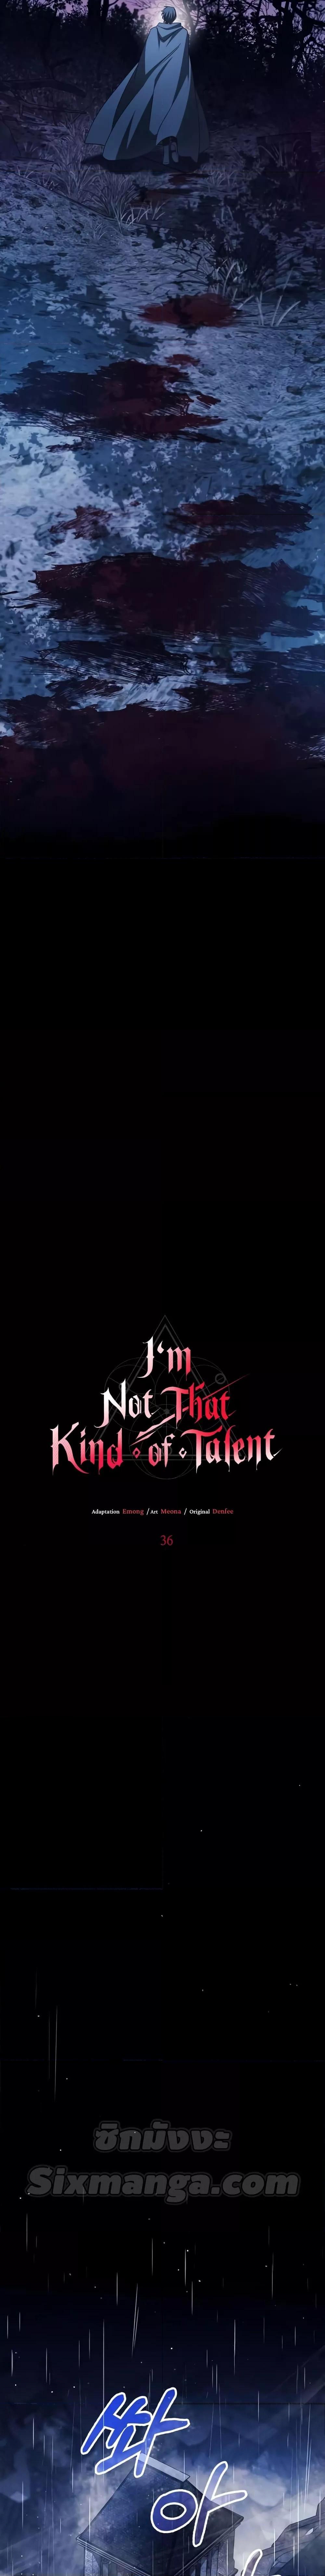 Iโ€m Not That Kind of Talent 36 12